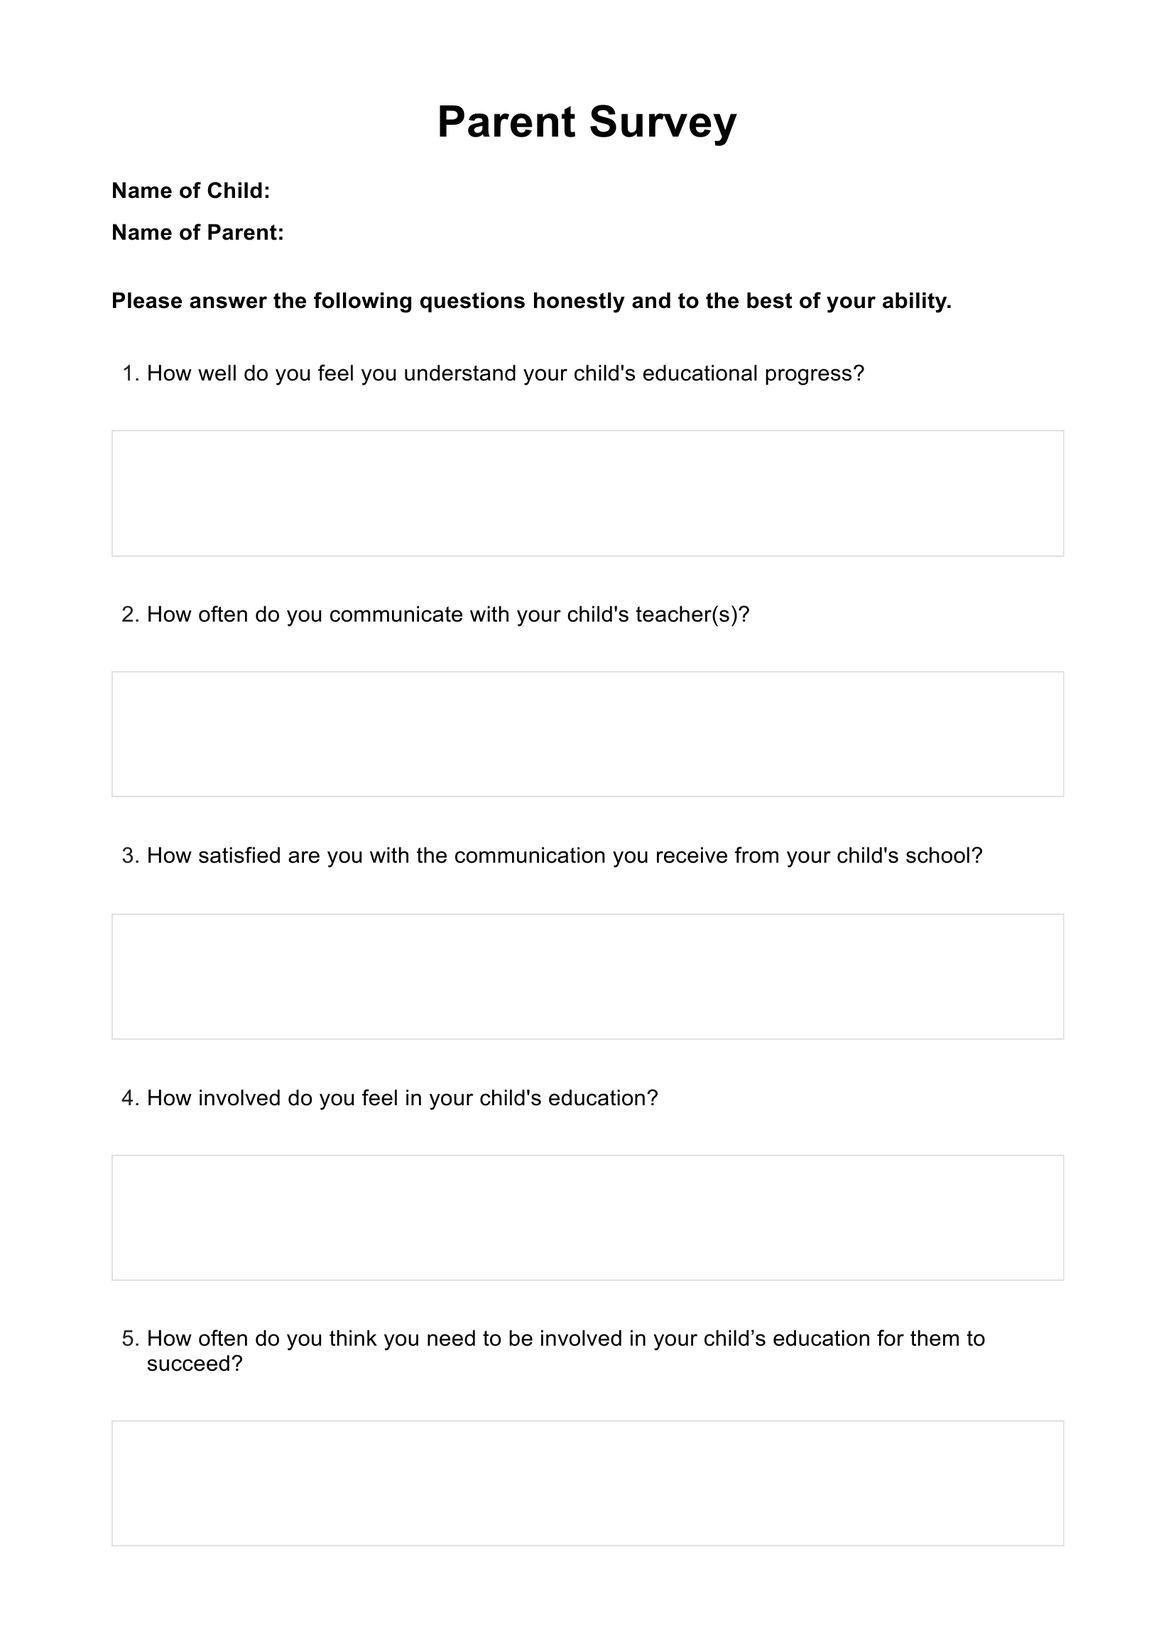 Parent Survey PDF Example